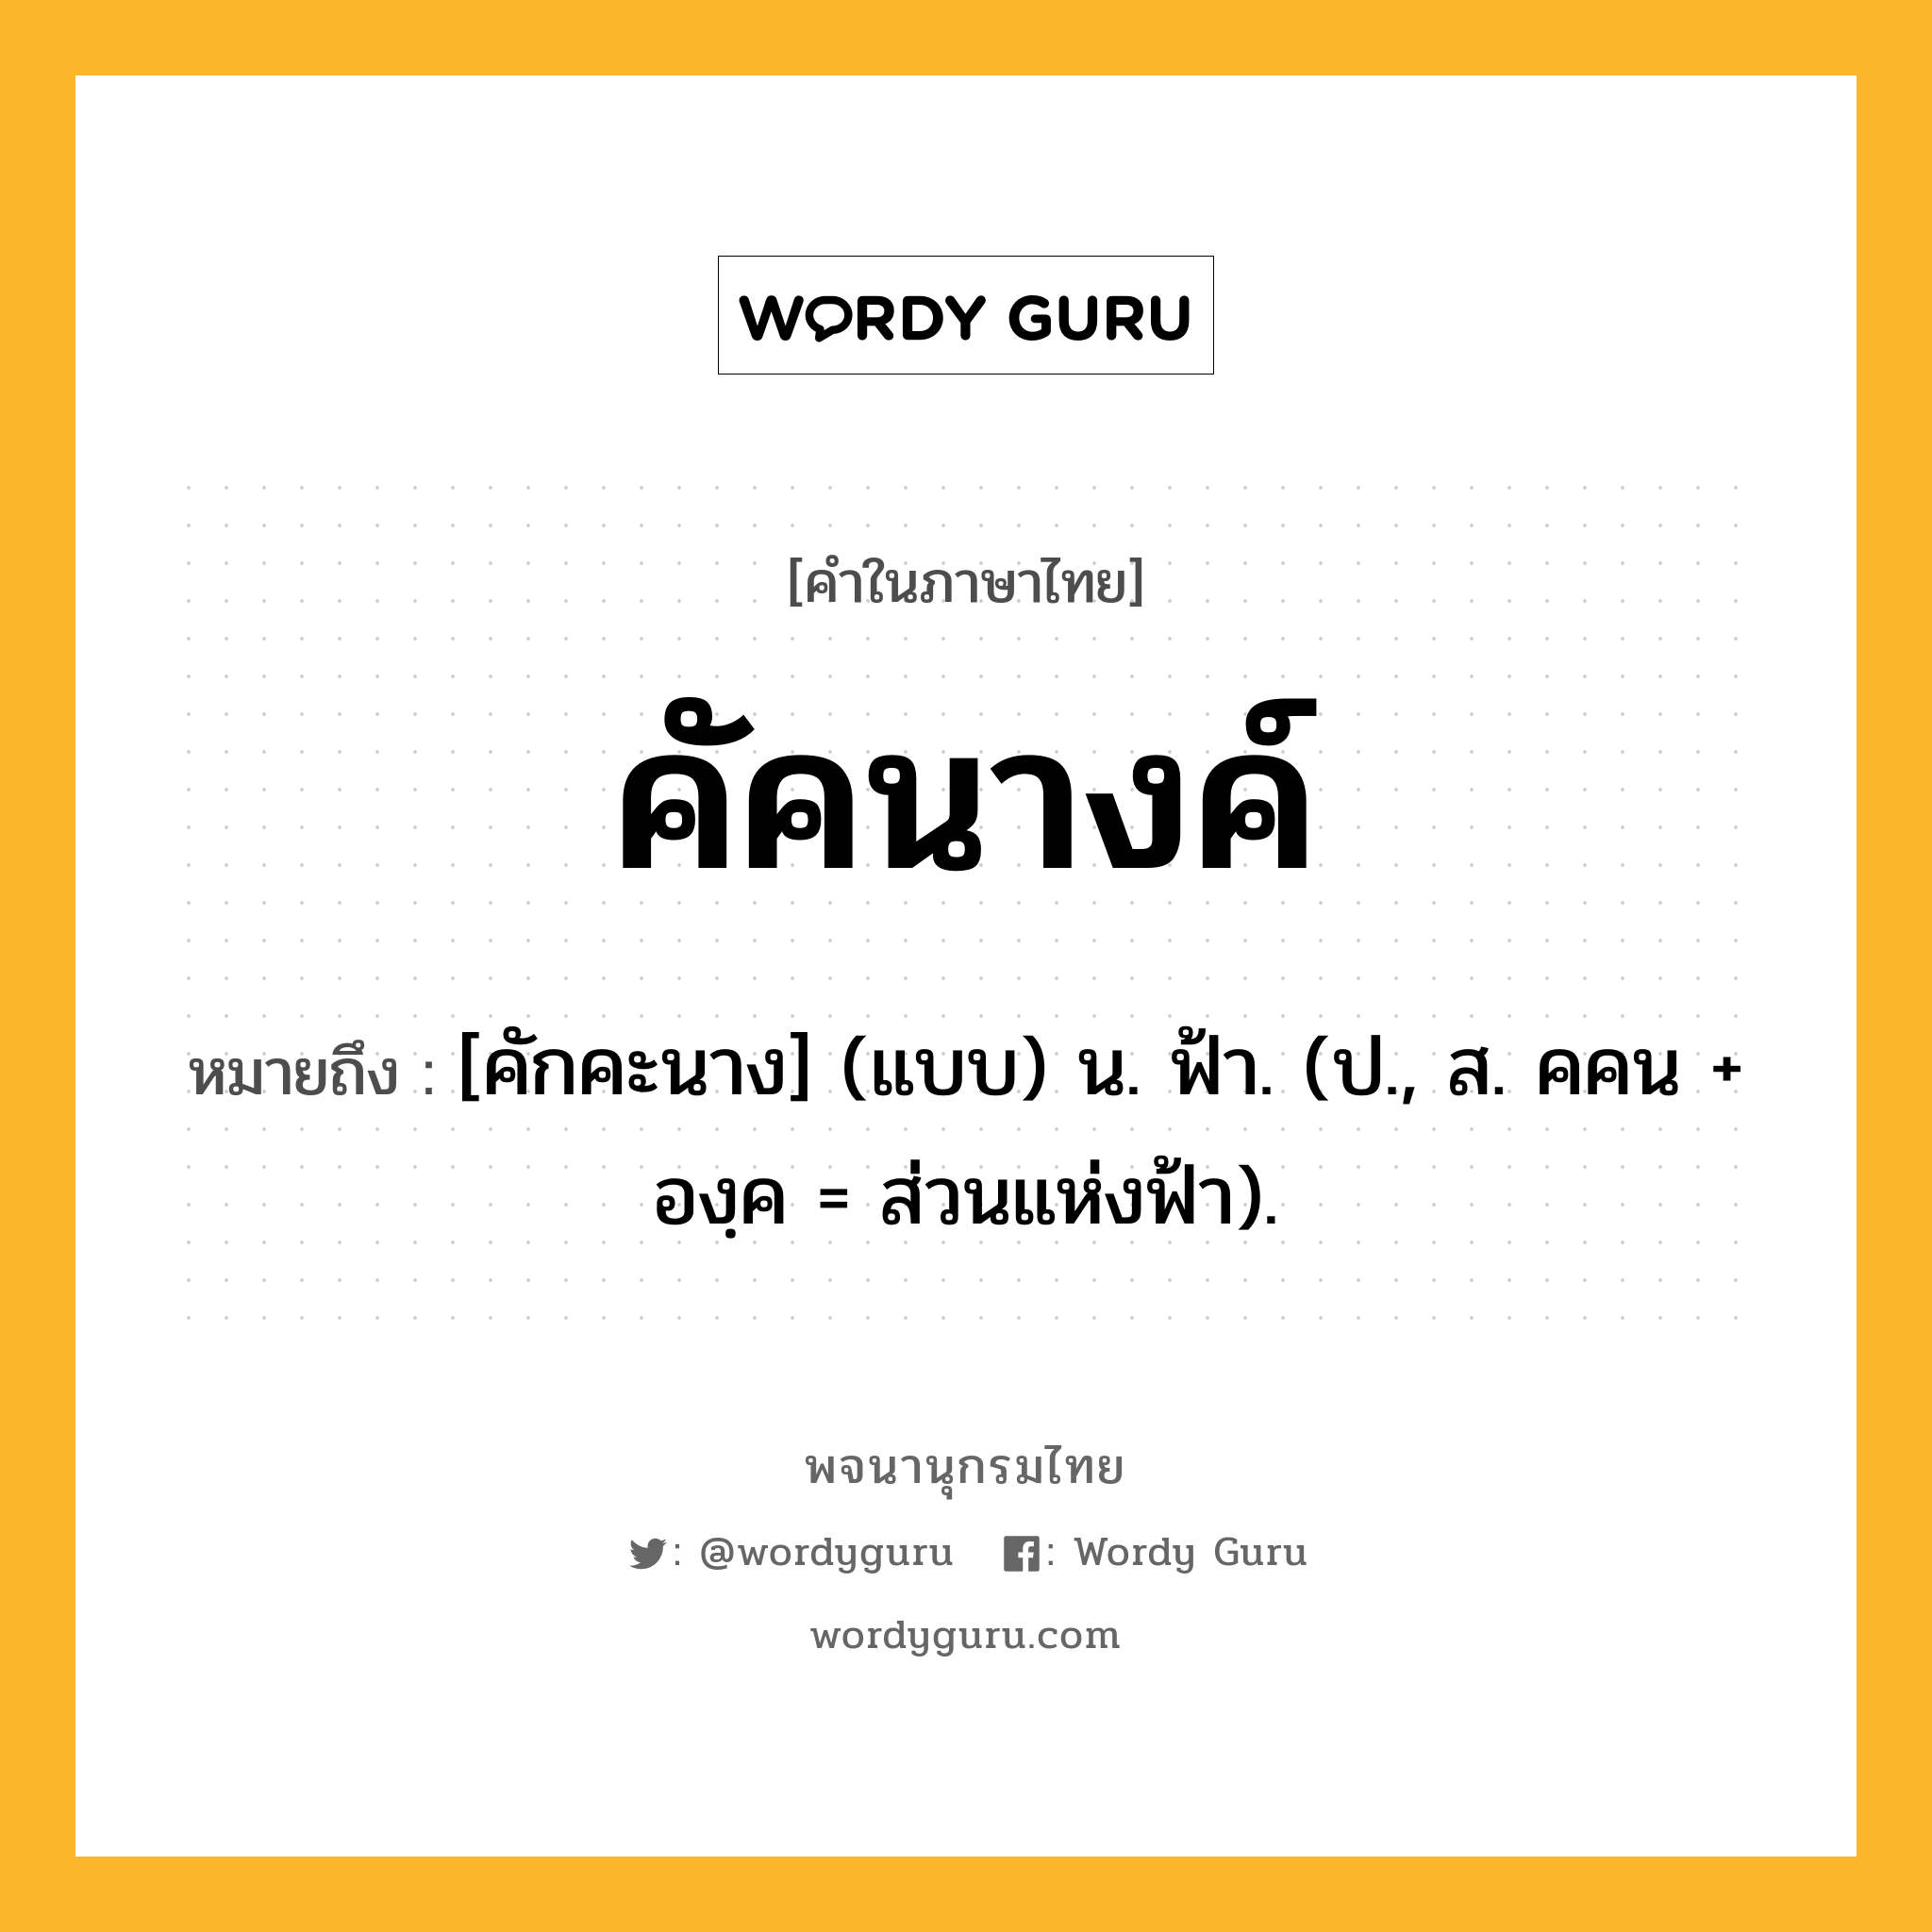 คัคนางค์ ความหมาย หมายถึงอะไร?, คำในภาษาไทย คัคนางค์ หมายถึง [คักคะนาง] (แบบ) น. ฟ้า. (ป., ส. คคน + องฺค = ส่วนแห่งฟ้า).